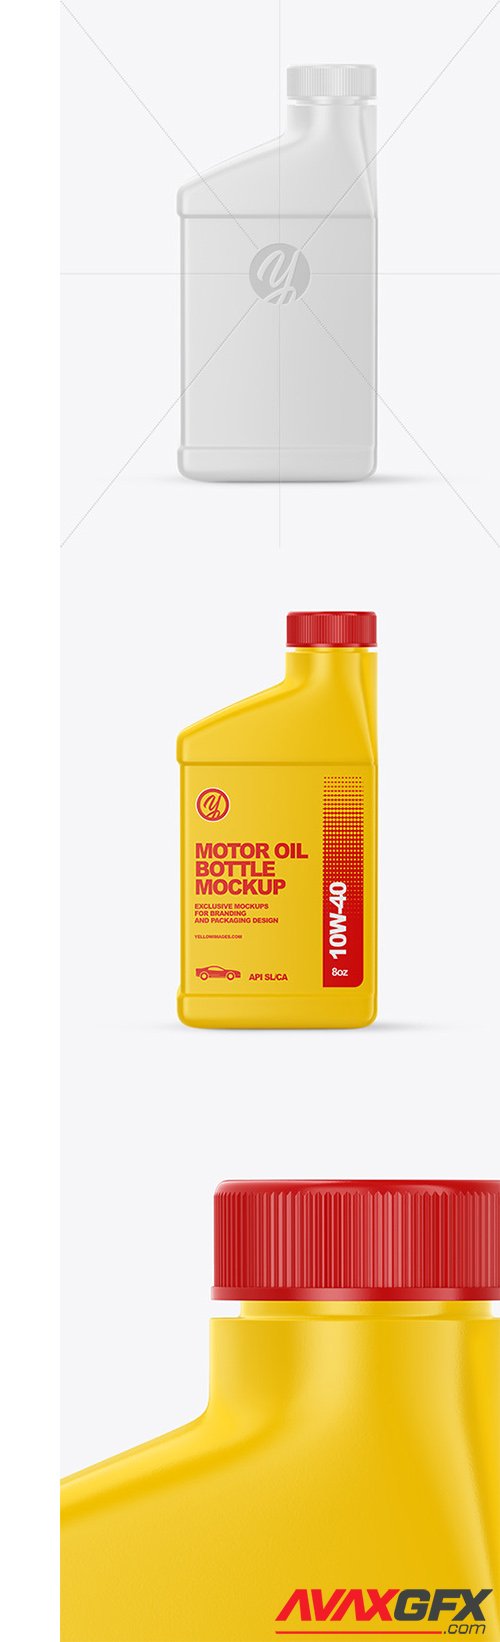 Motor Oil Bottle Mockup 60596